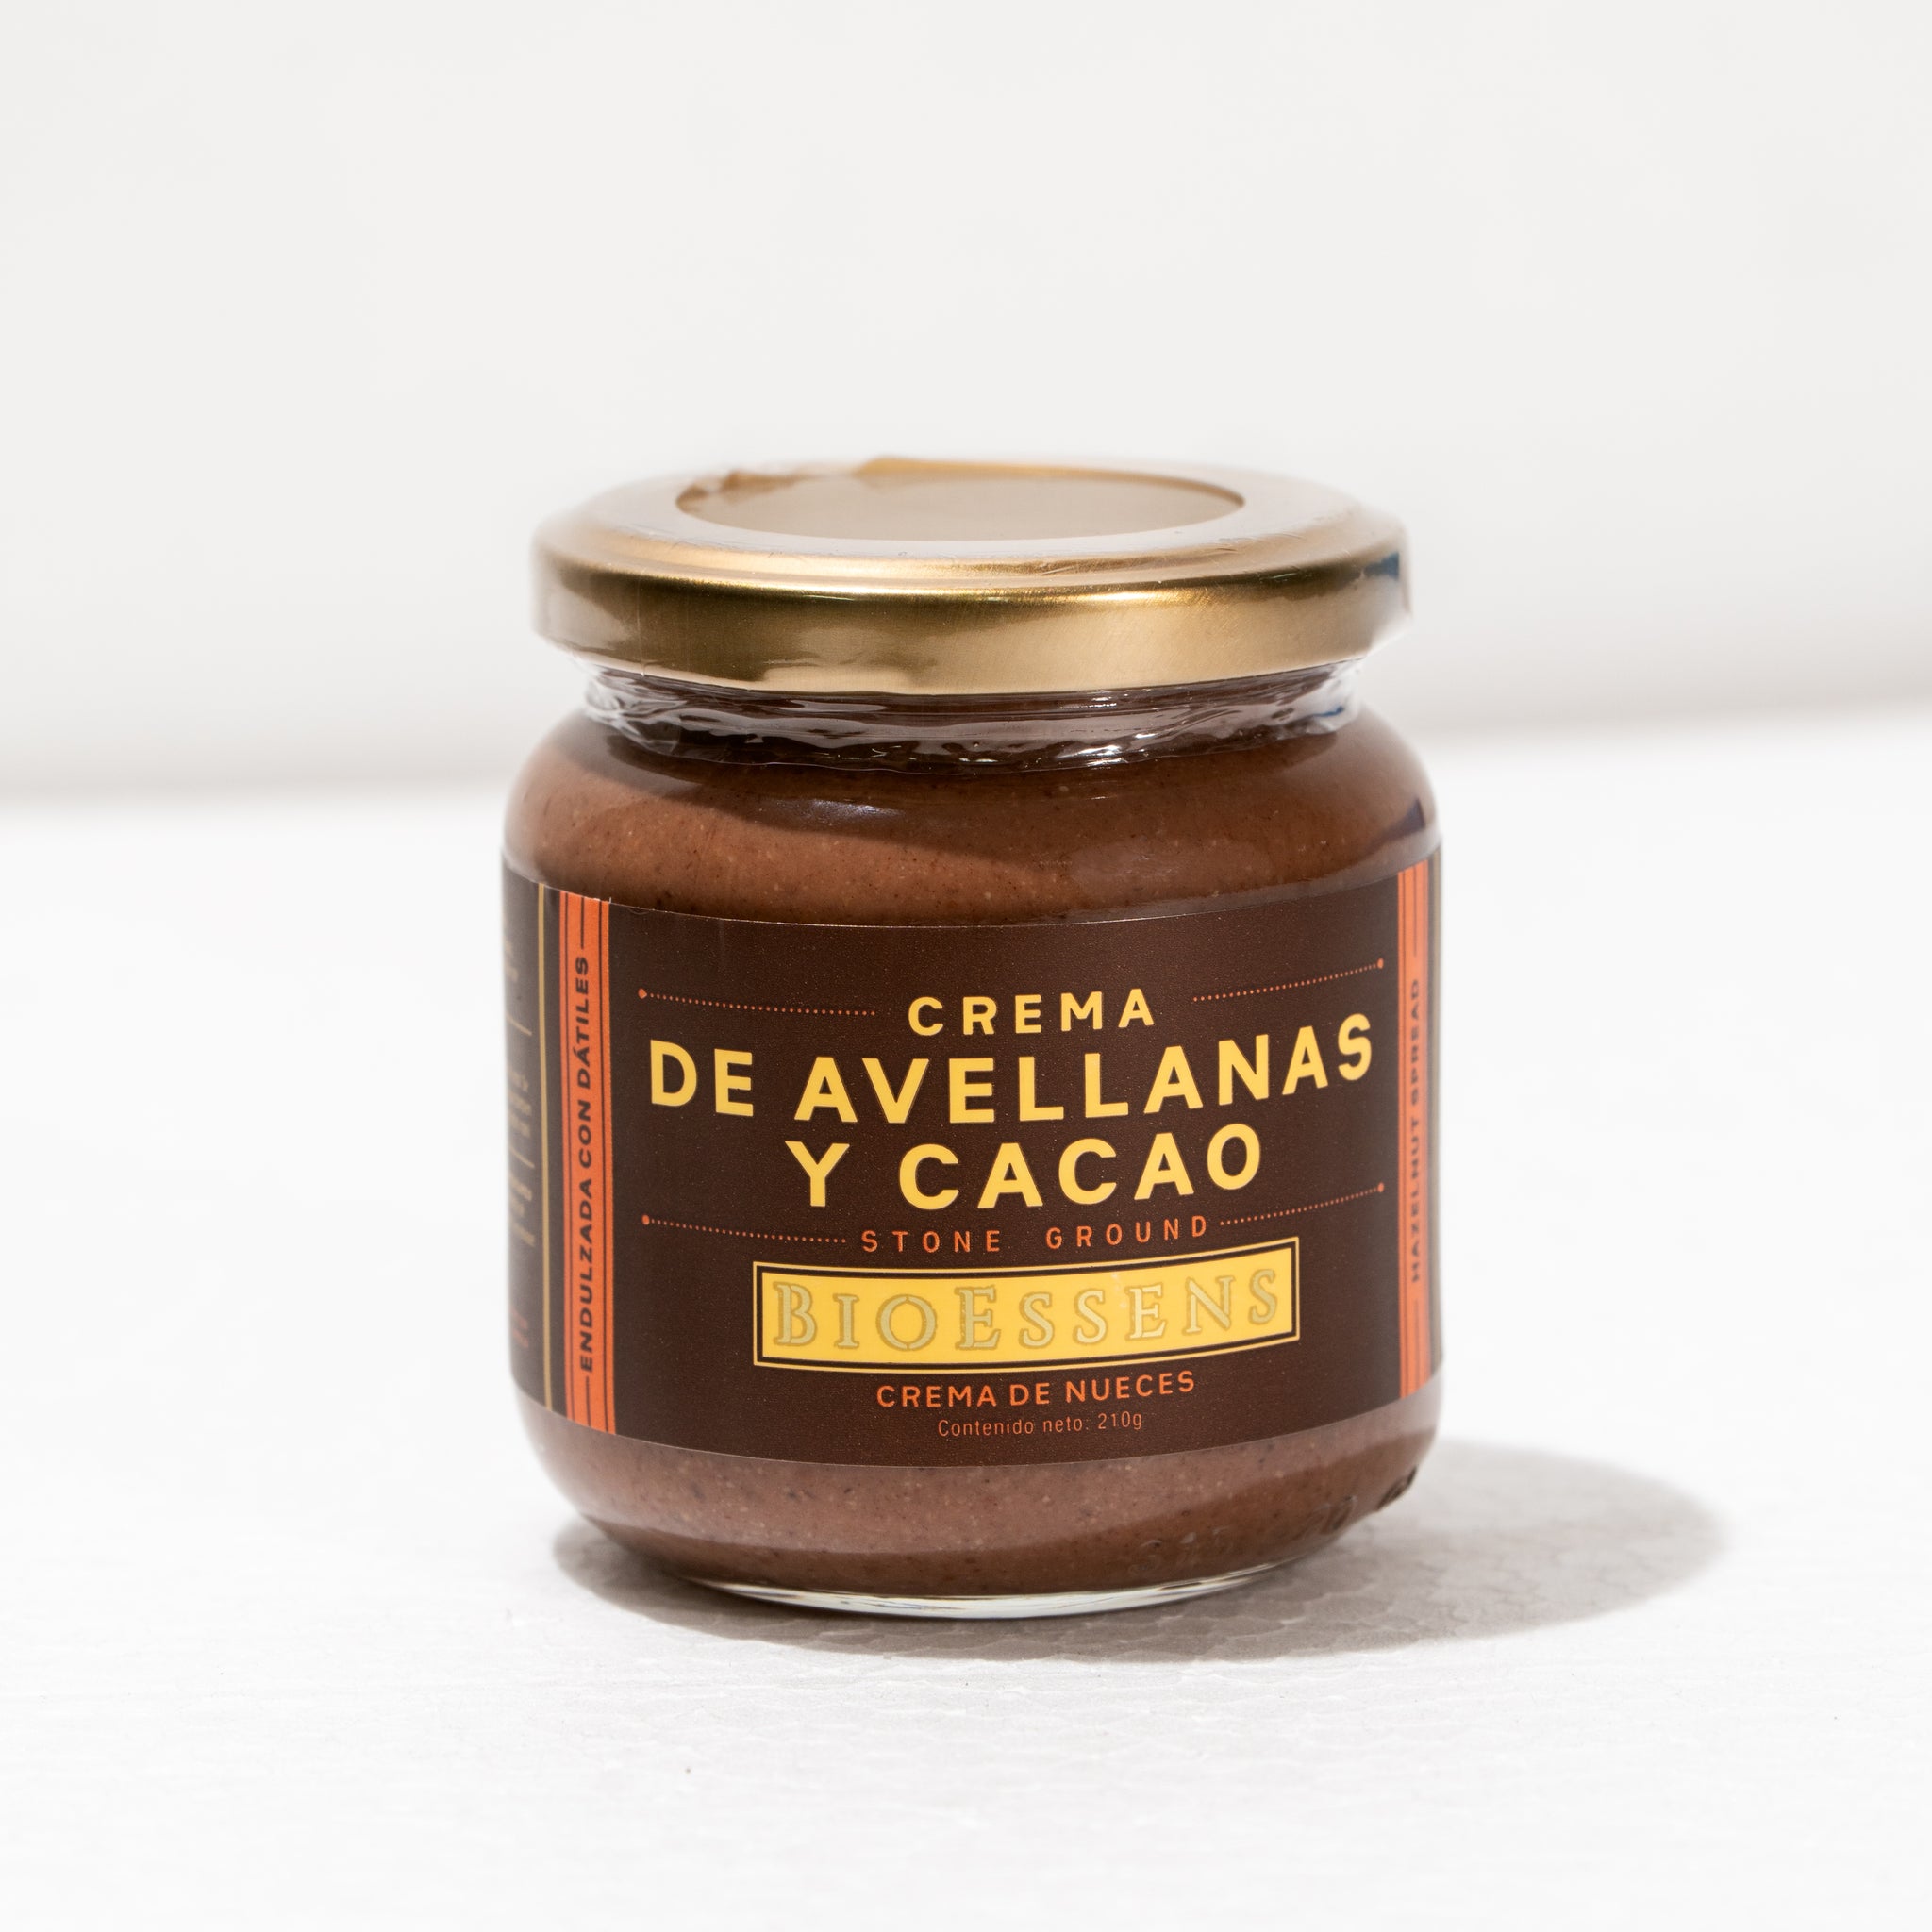 Crema de avellanas y cacao